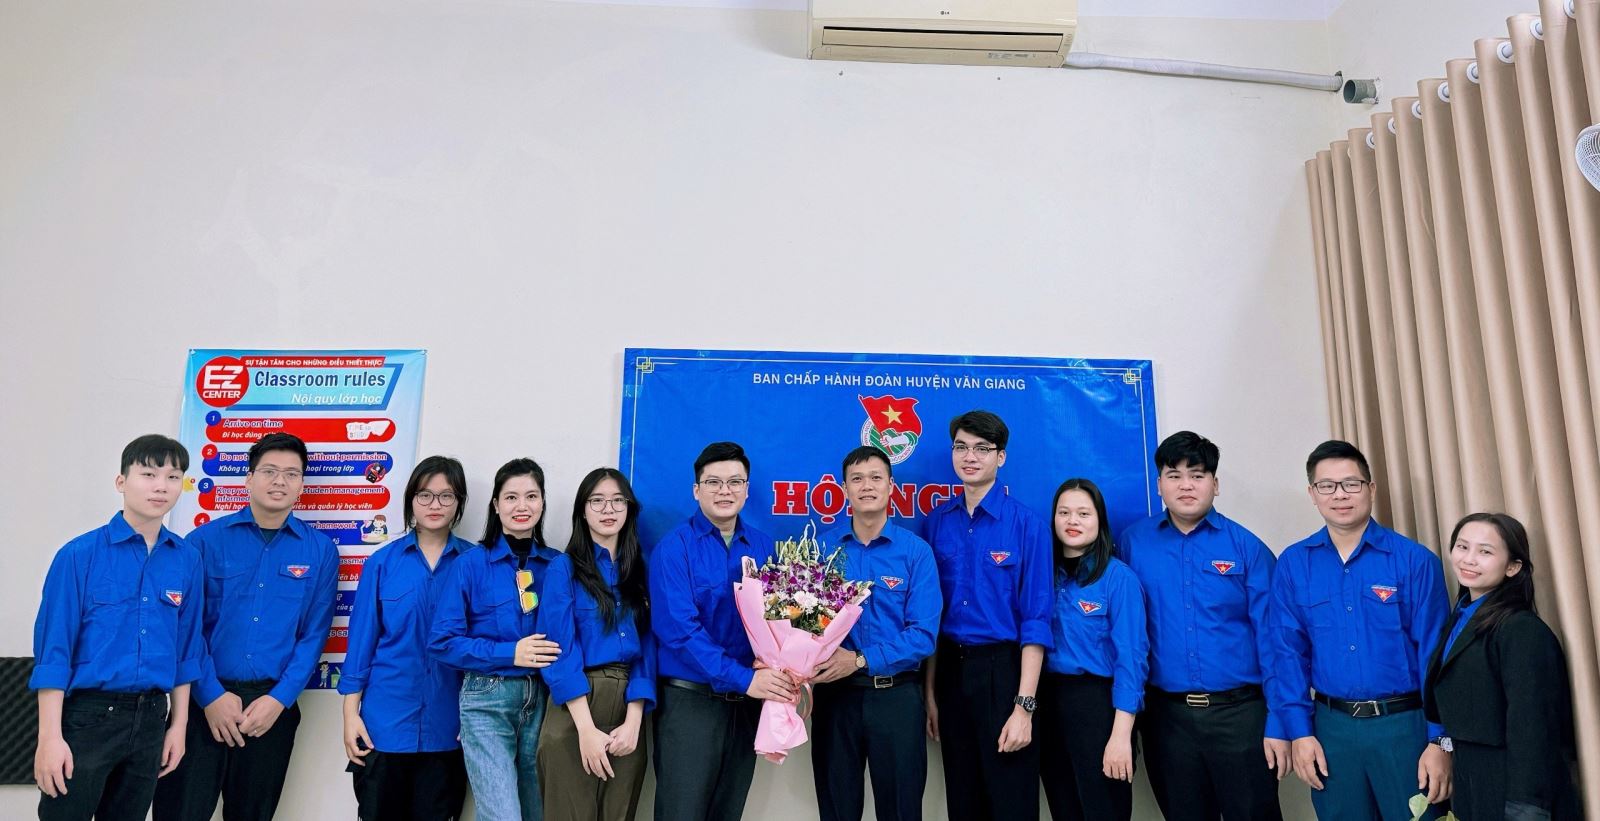 Huyện đoàn Văn Giang thành lập Chi đoàn Công ty cổ phần đầu tư và phát triển giáo dục M.I.T Việt Nam